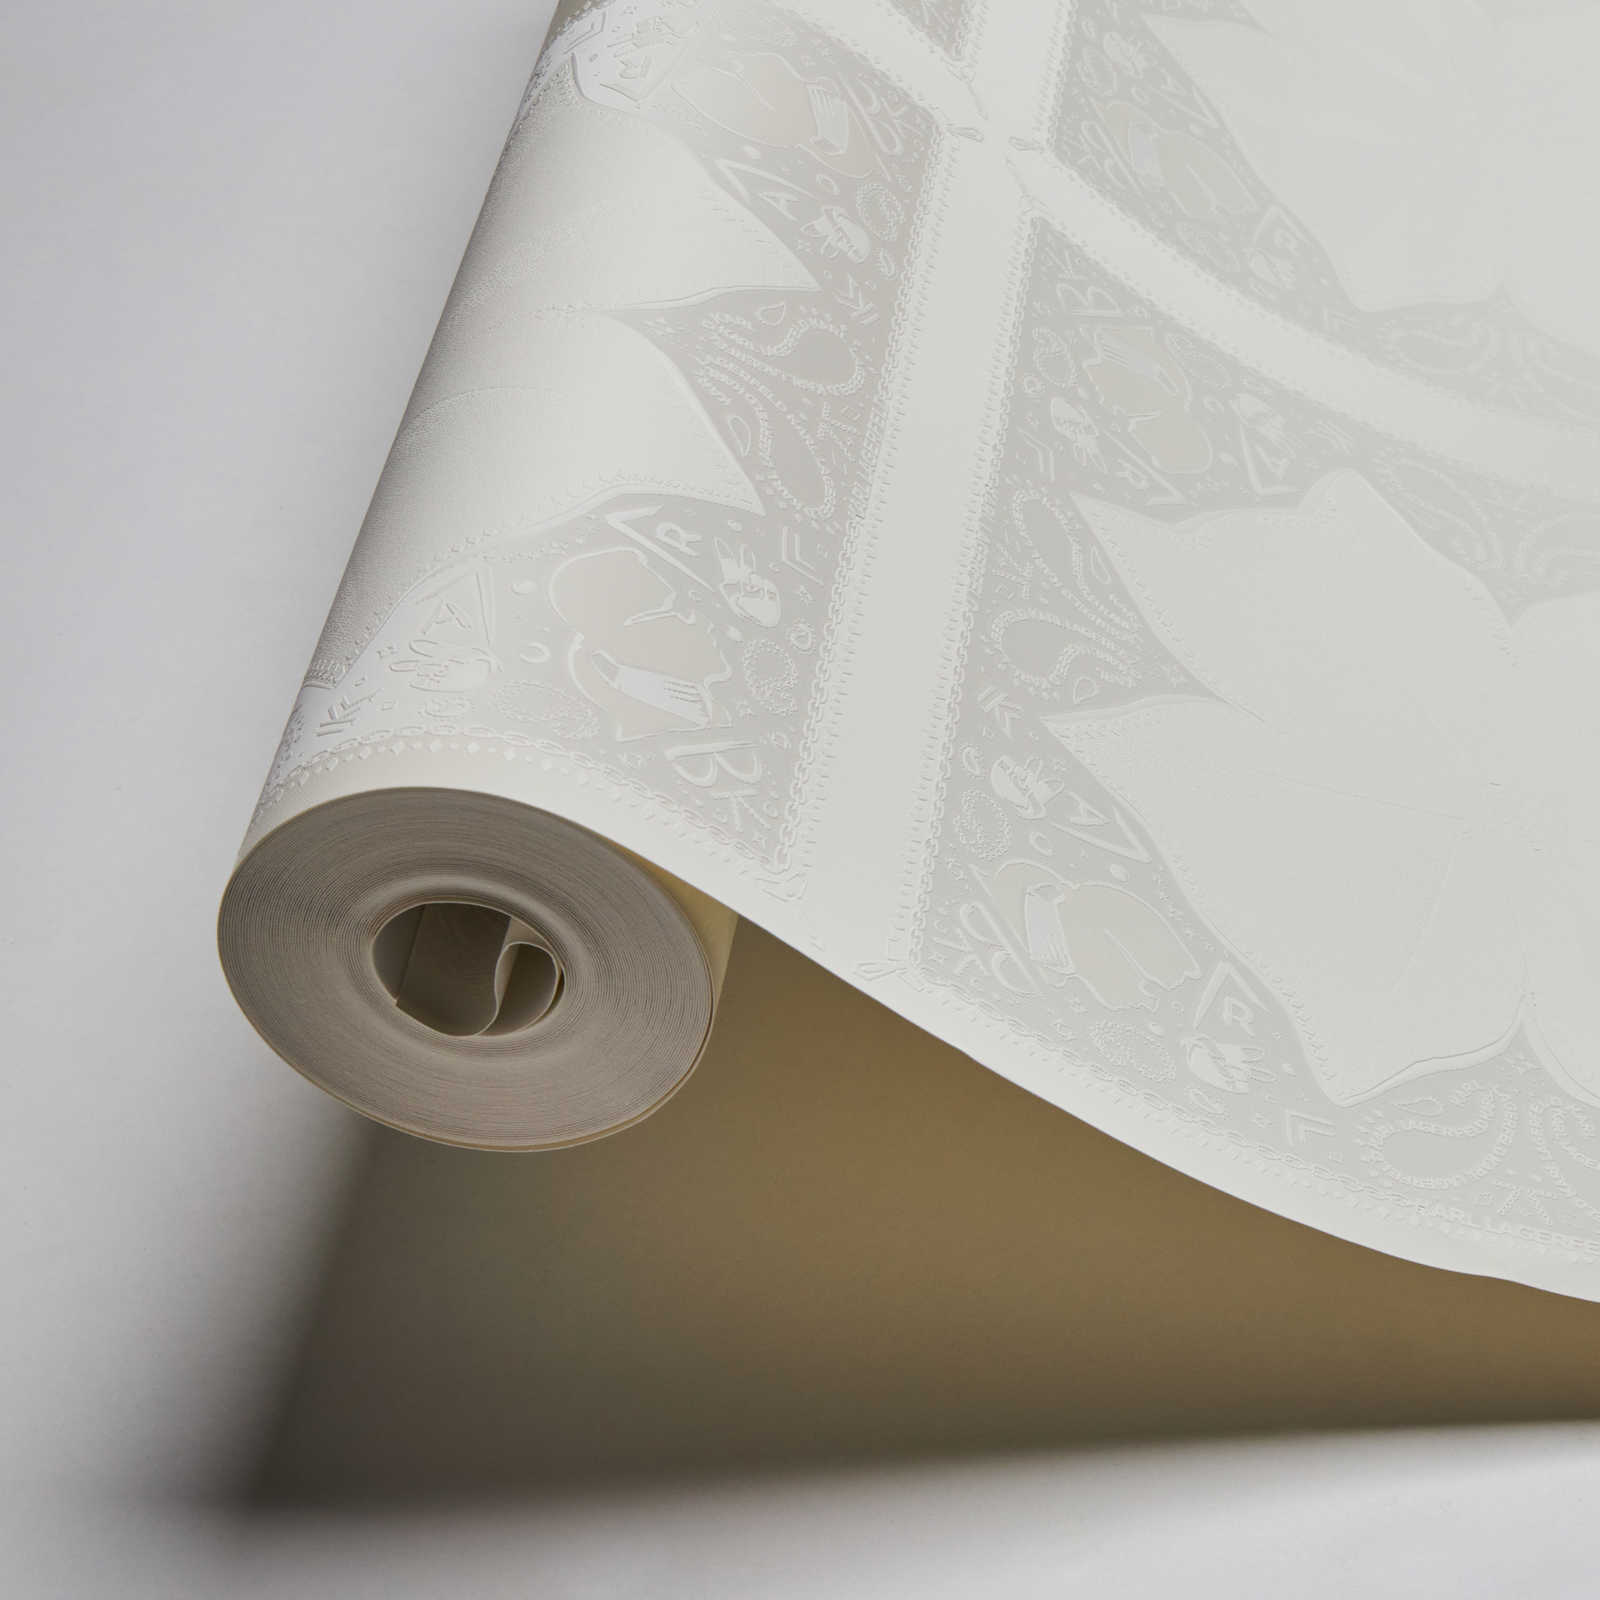             Karl LAGERFELD Papier peint Cravate & Doodle Art - Blanc
        